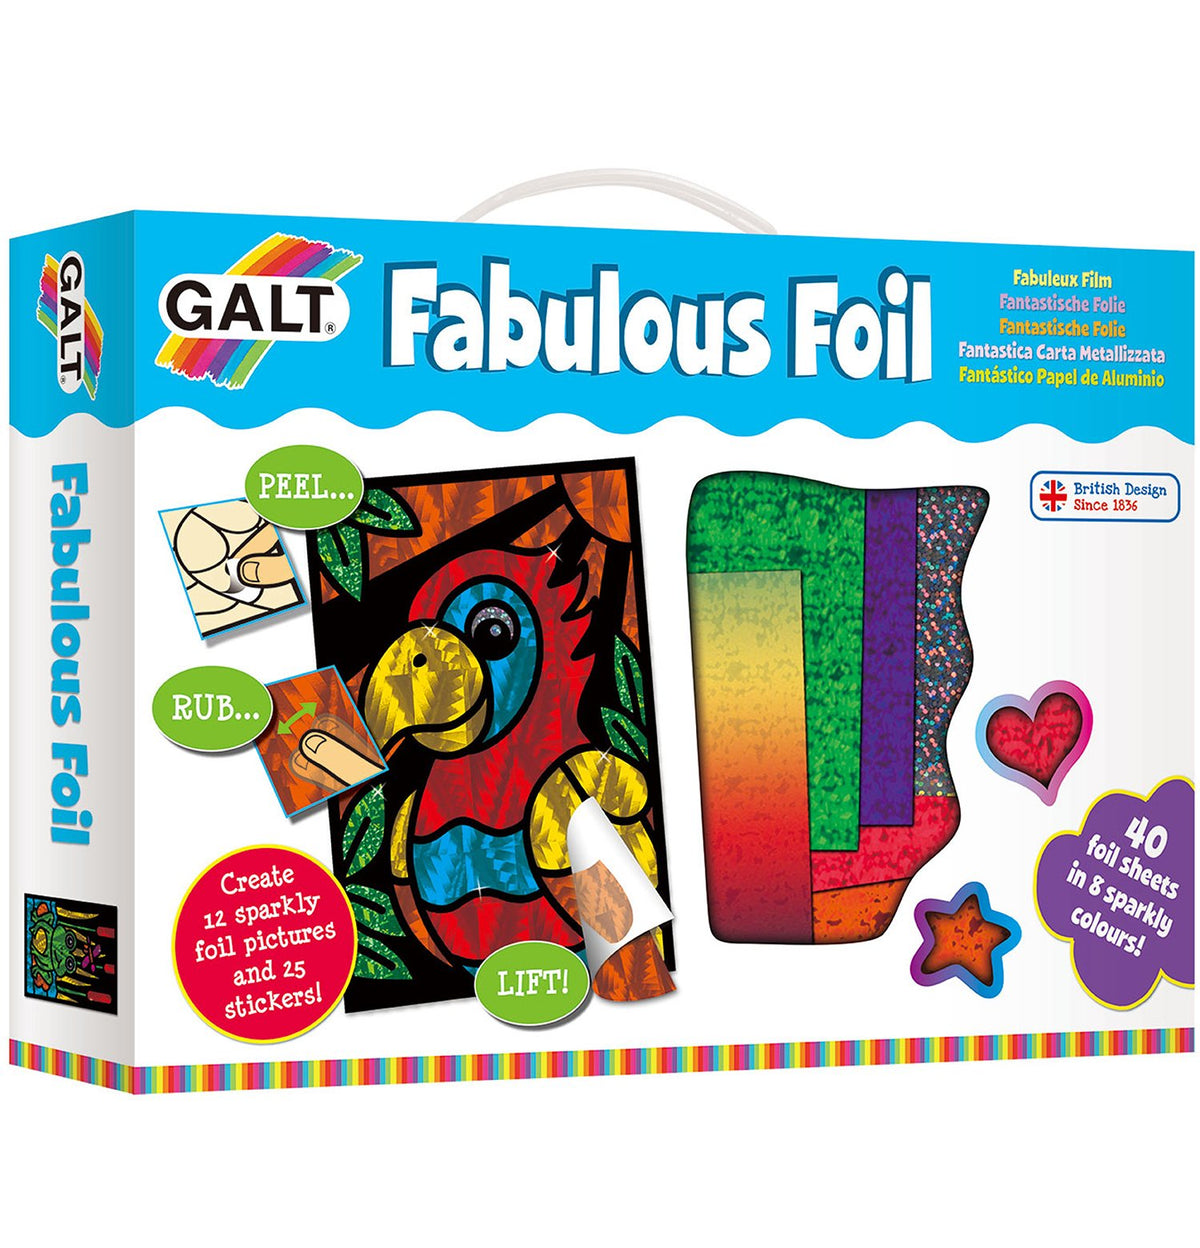 Fabulous Foil - Galt